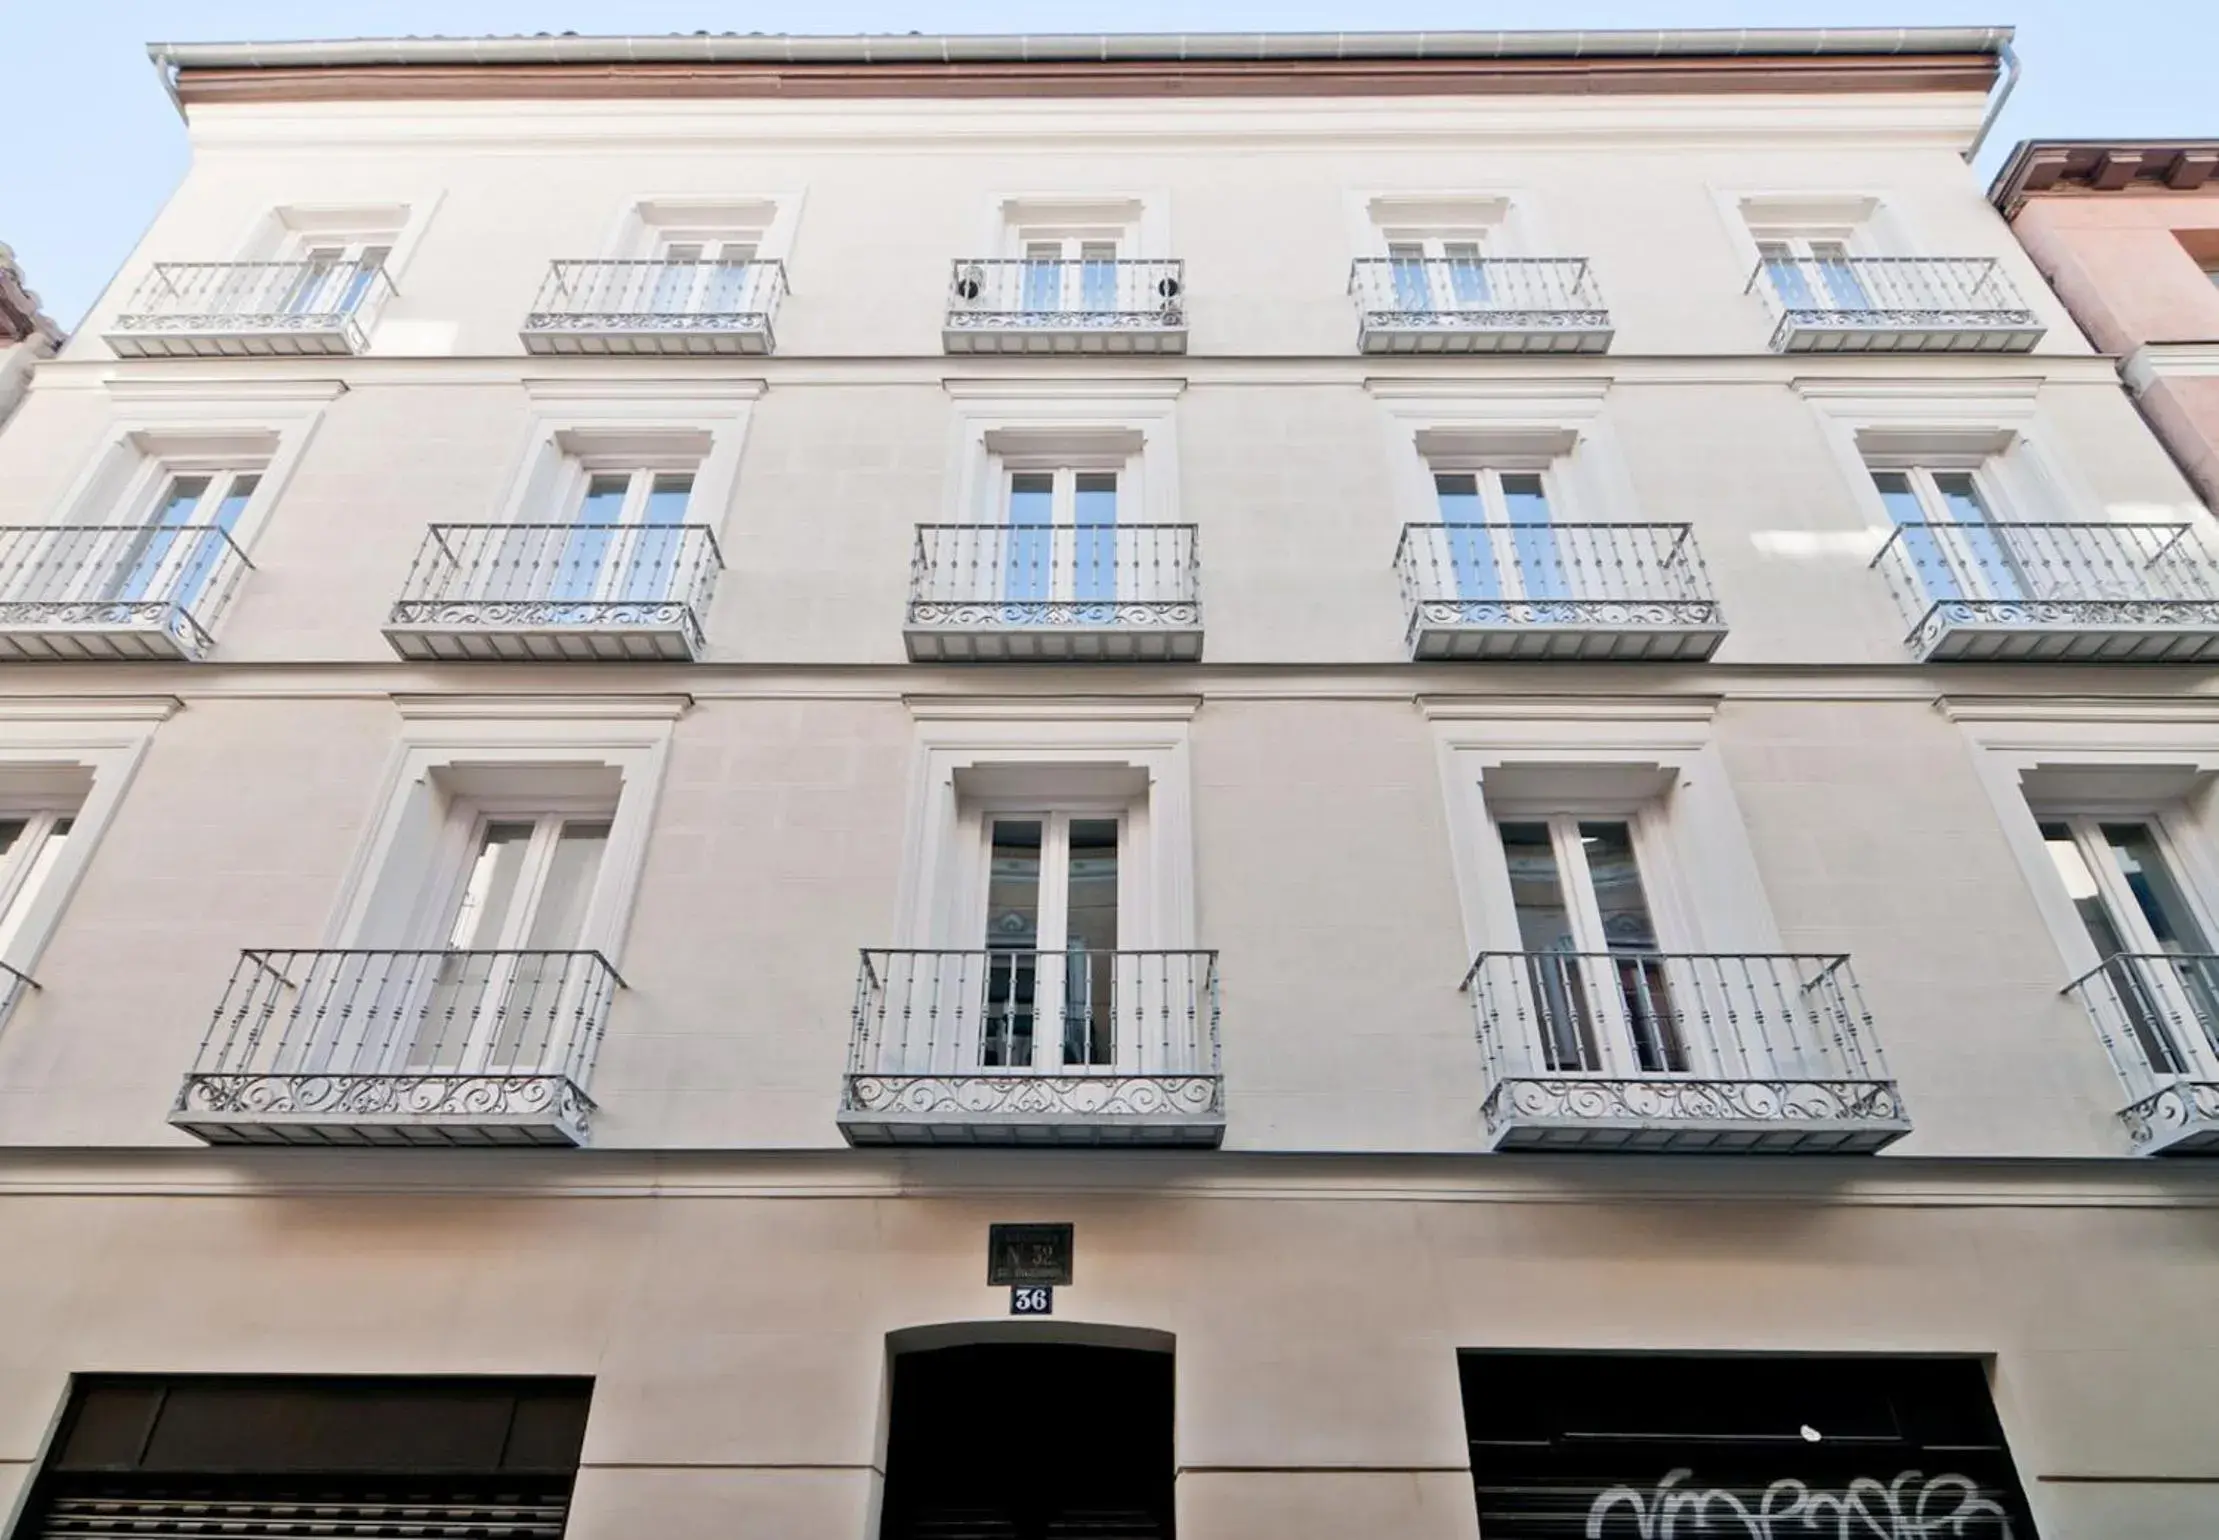 Facade/entrance, Property Building in SmartRental Madrid Atocha